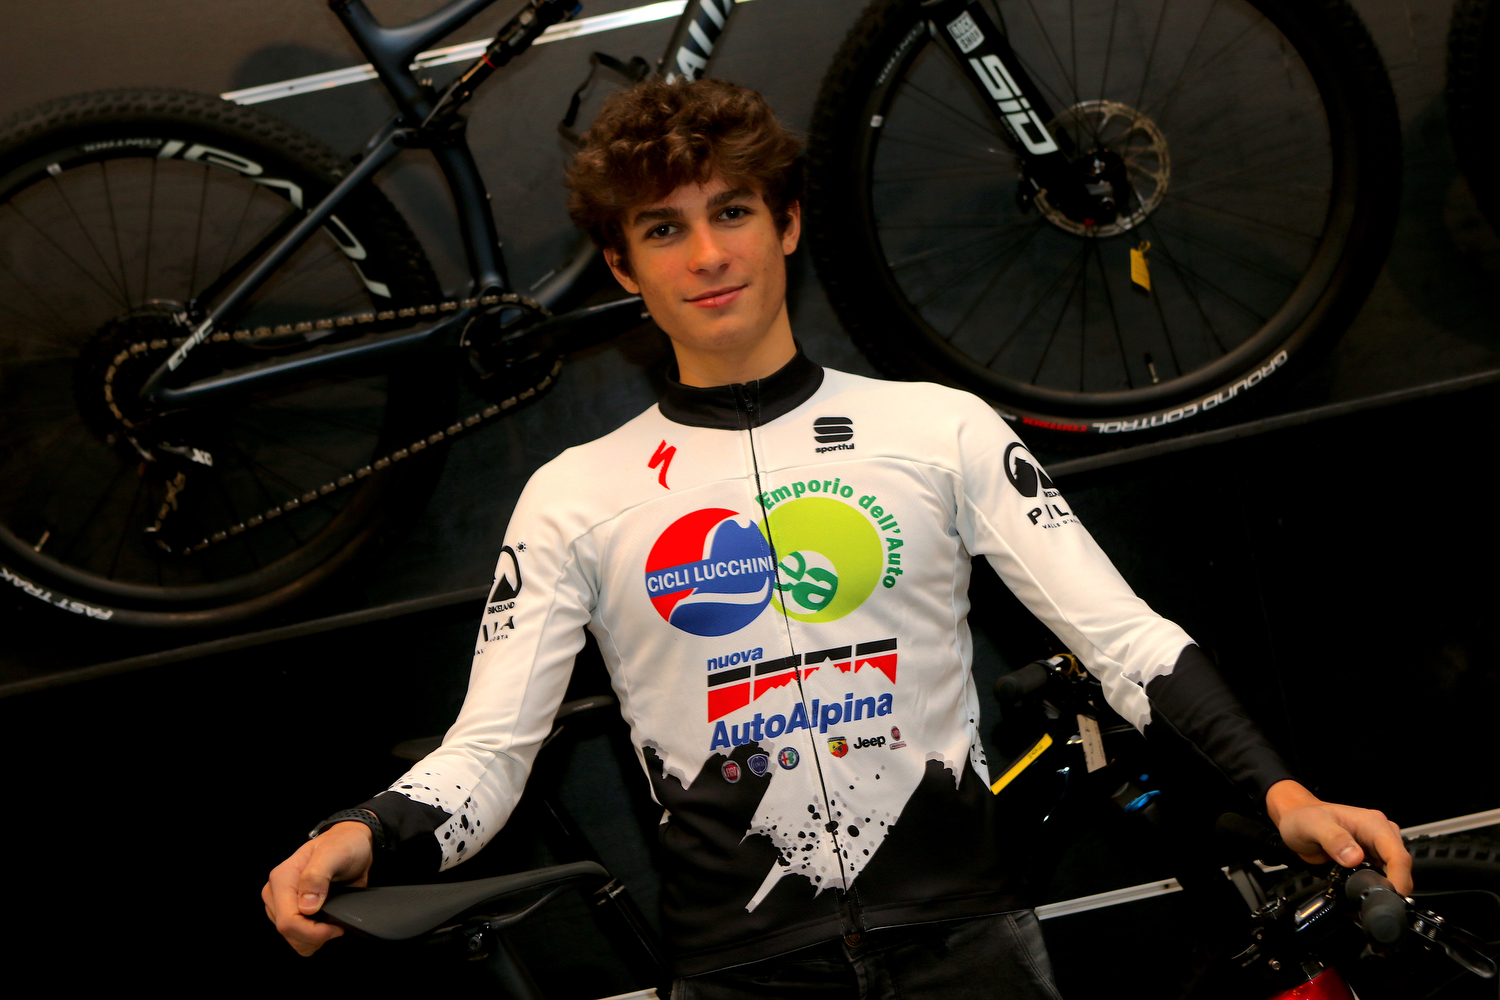 Ciclismo: Yannick Parisi 1° nella gara internazionale in Slovenia